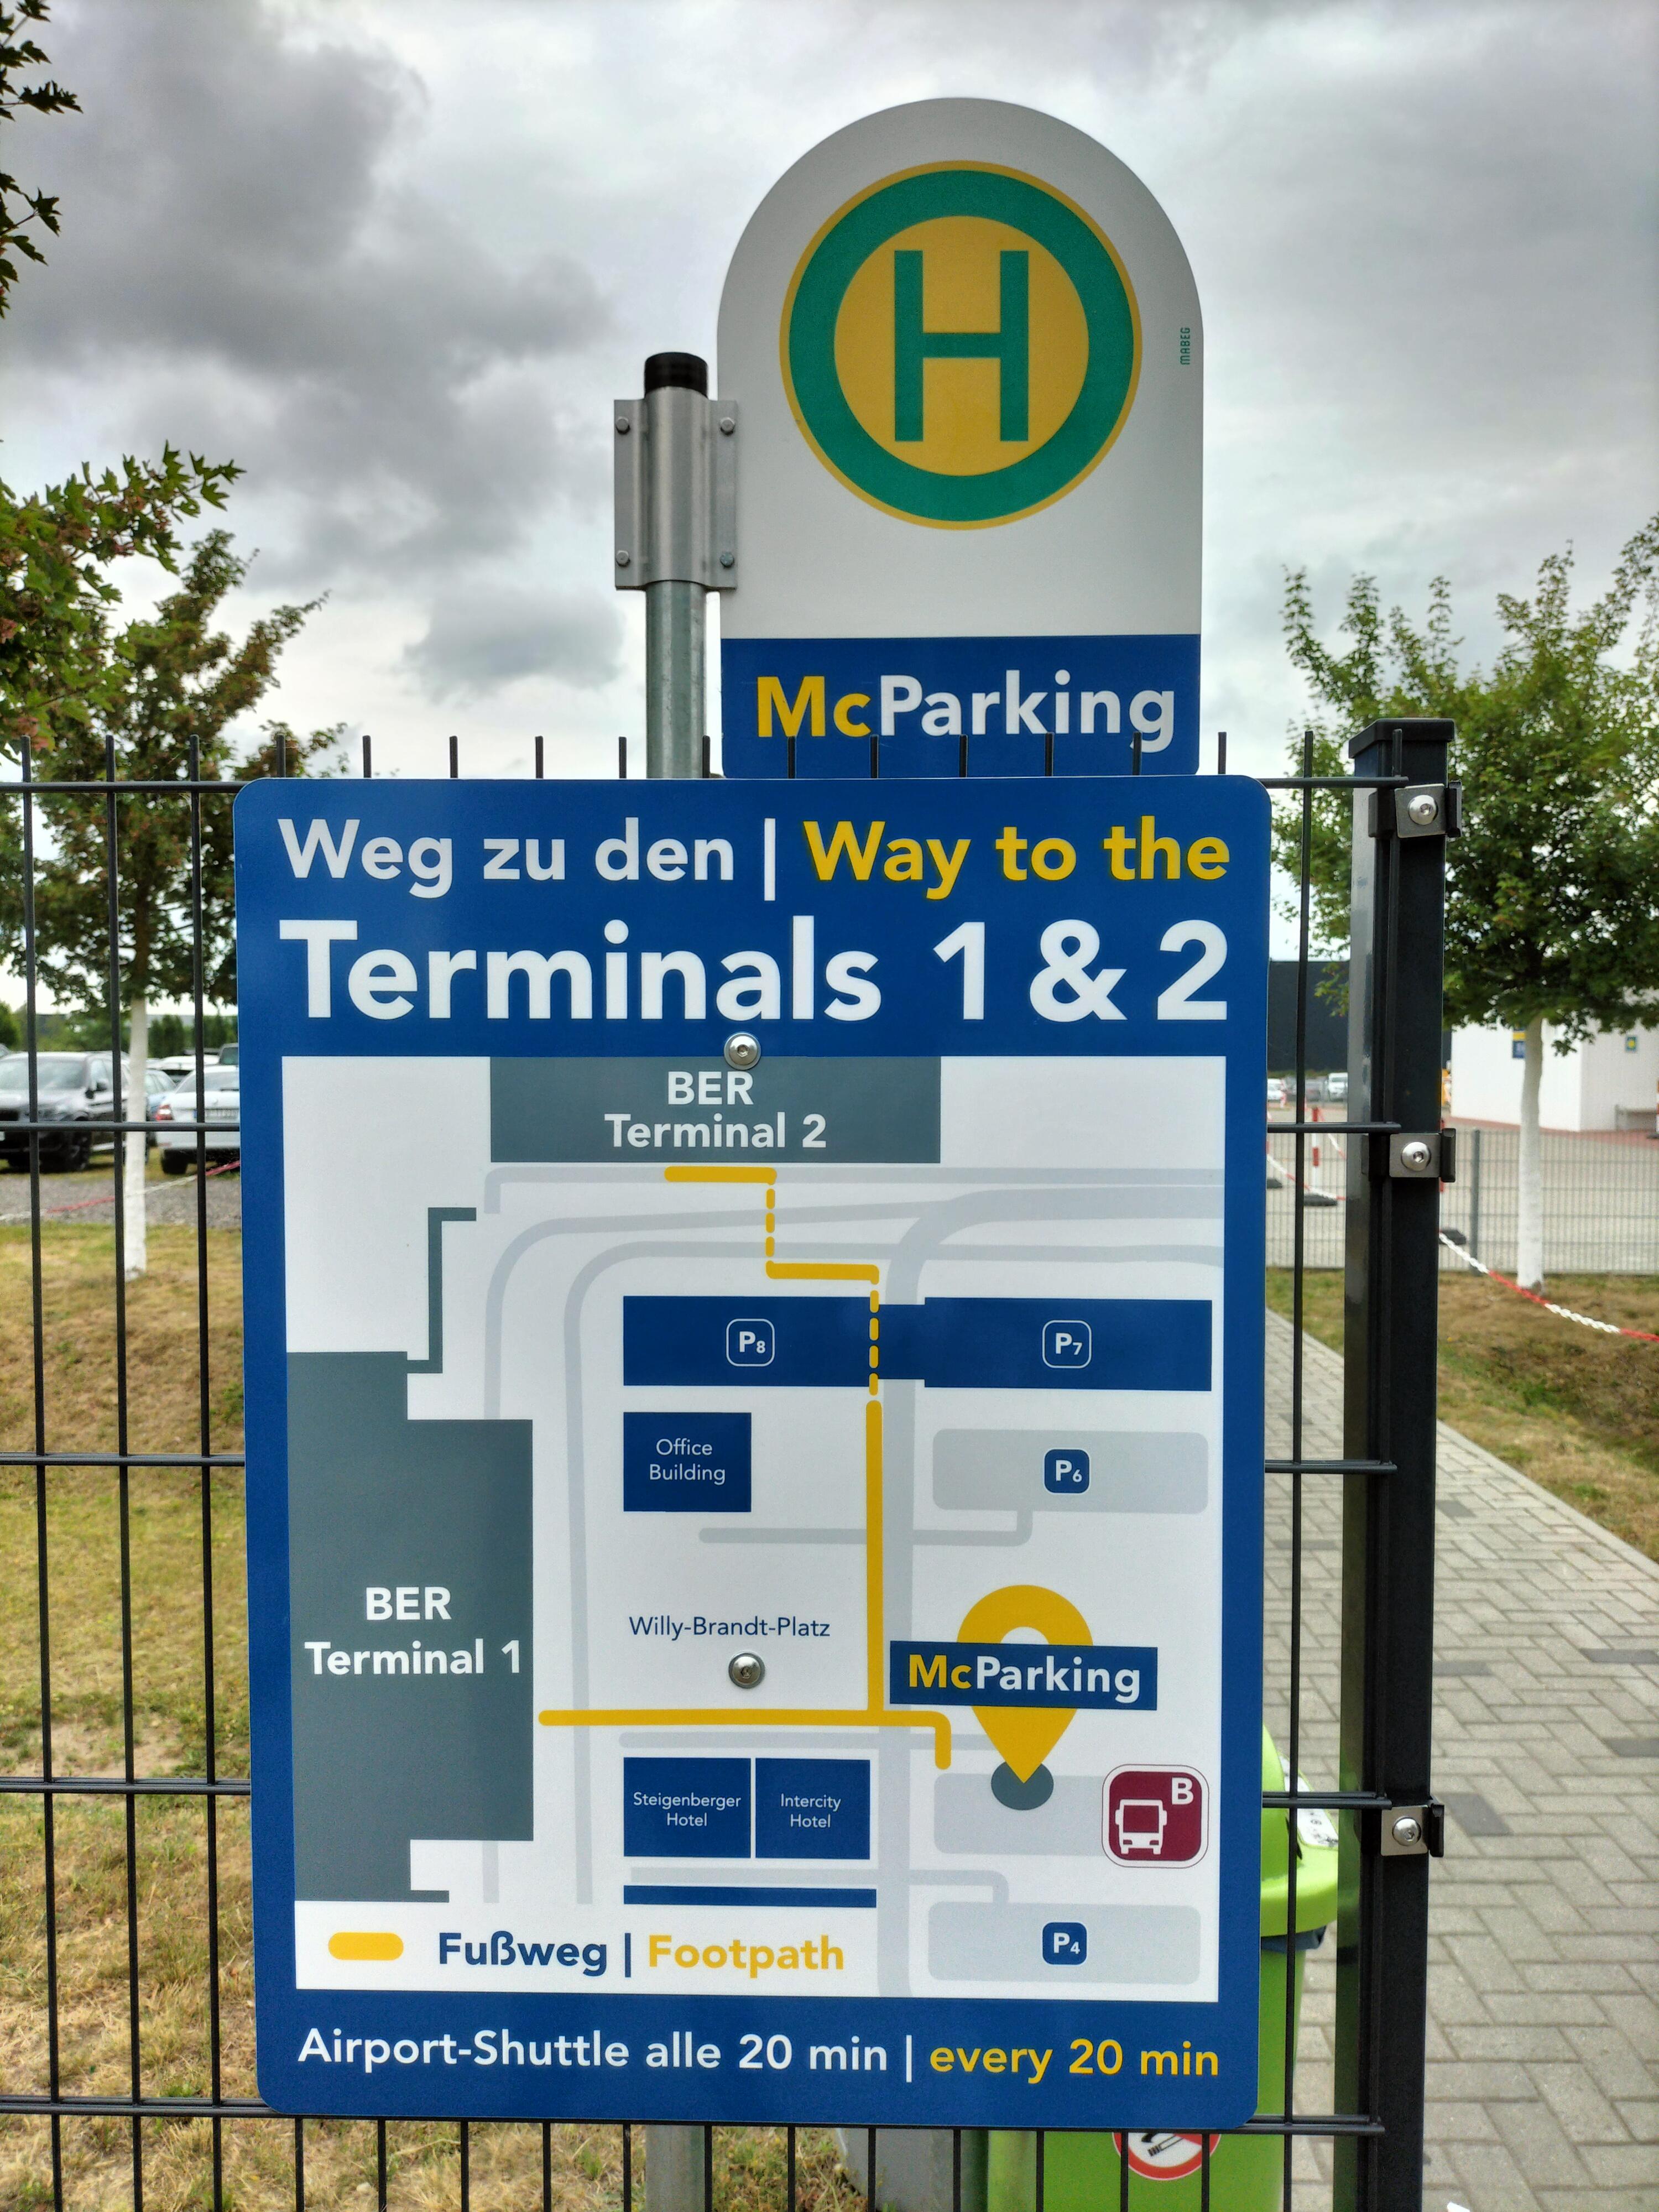 In wenigen Minuten erreichen Sie den Terminal 1 und 2 vom McParking Shuttle Busparkplatz